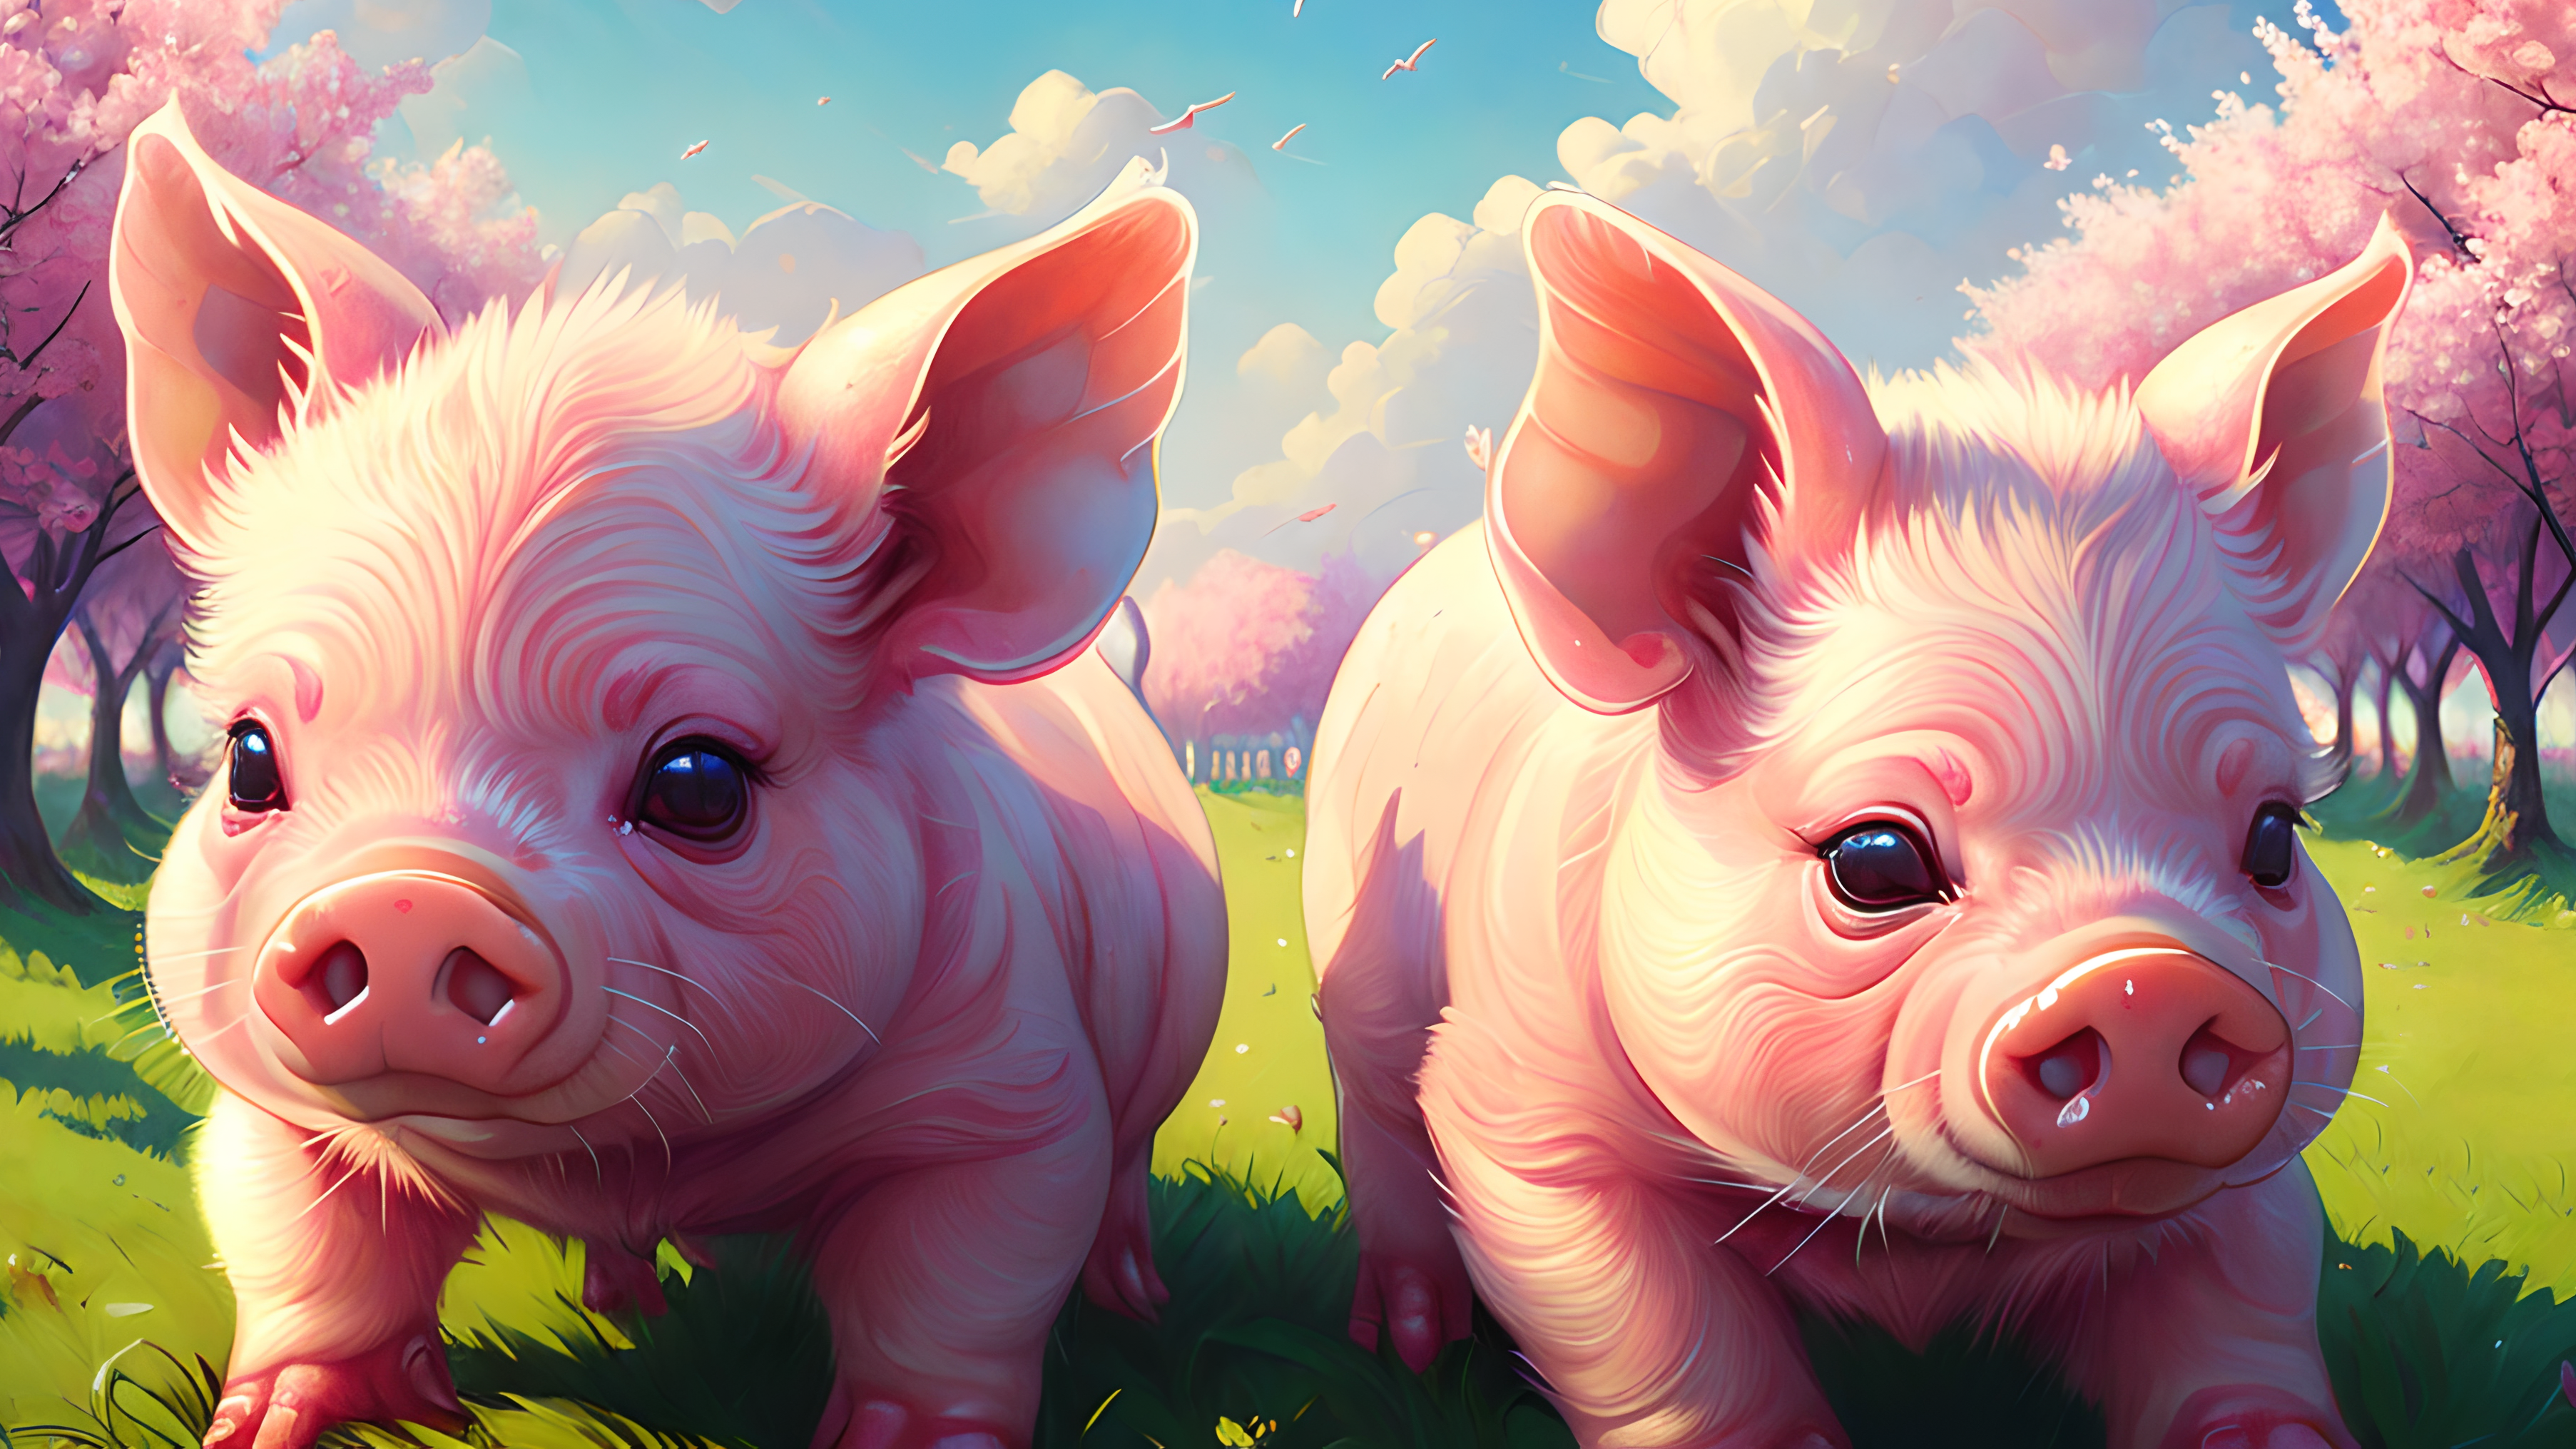 General 3611x2031 piglet pigs farm AI art animals grass trees